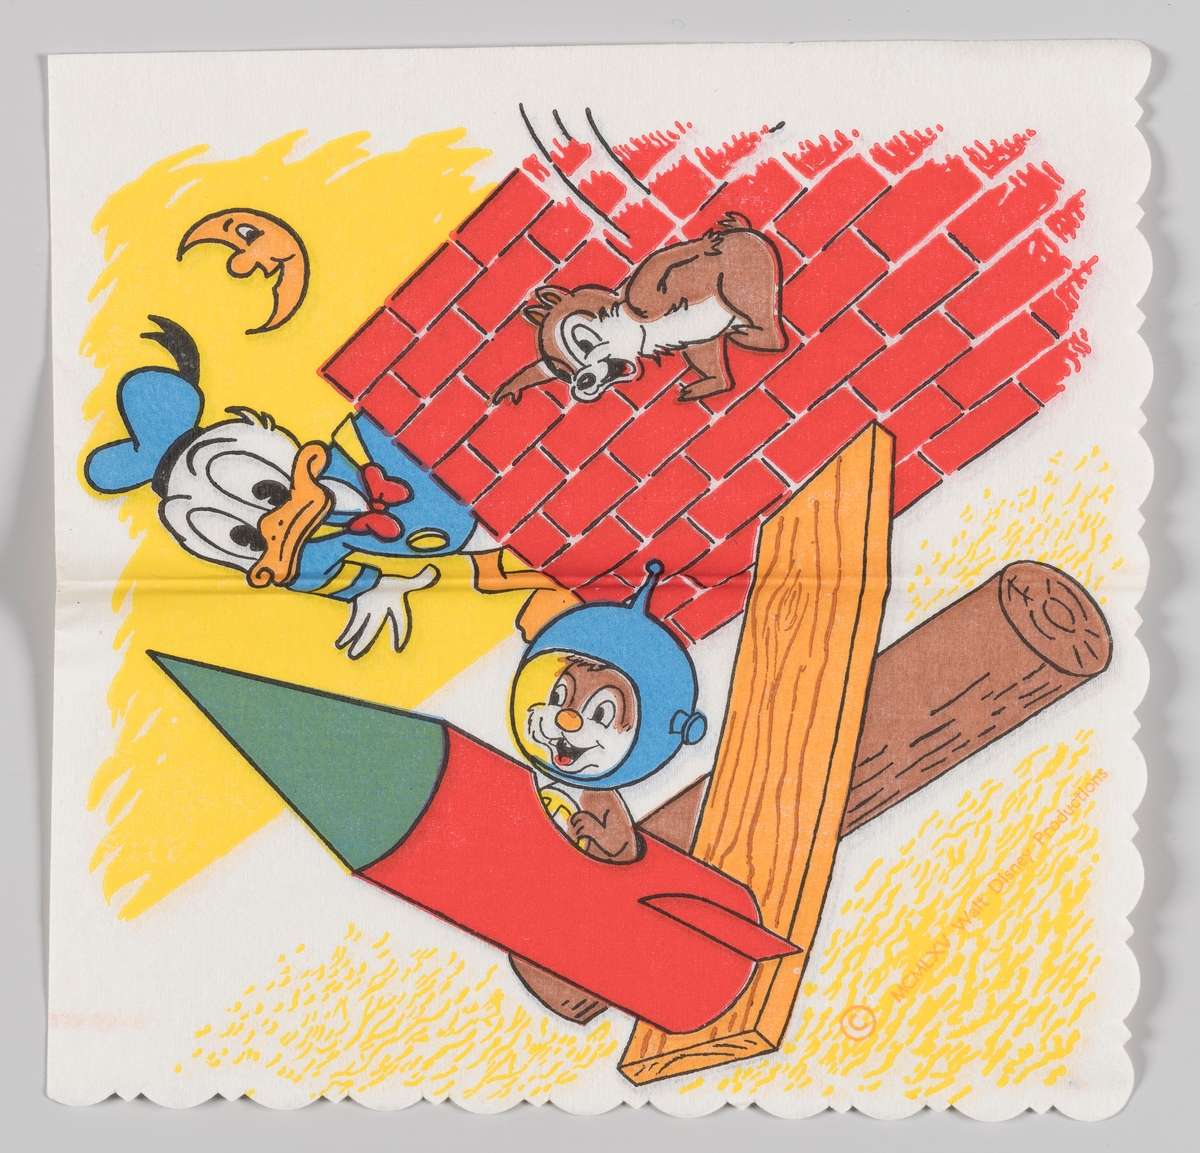 Donald Duck ser på Snipp og Snapp som prøver å få en rakett til å fly

Samme motiv på serviett MIA.00007-003-0156 og MIA.00007-003-0158